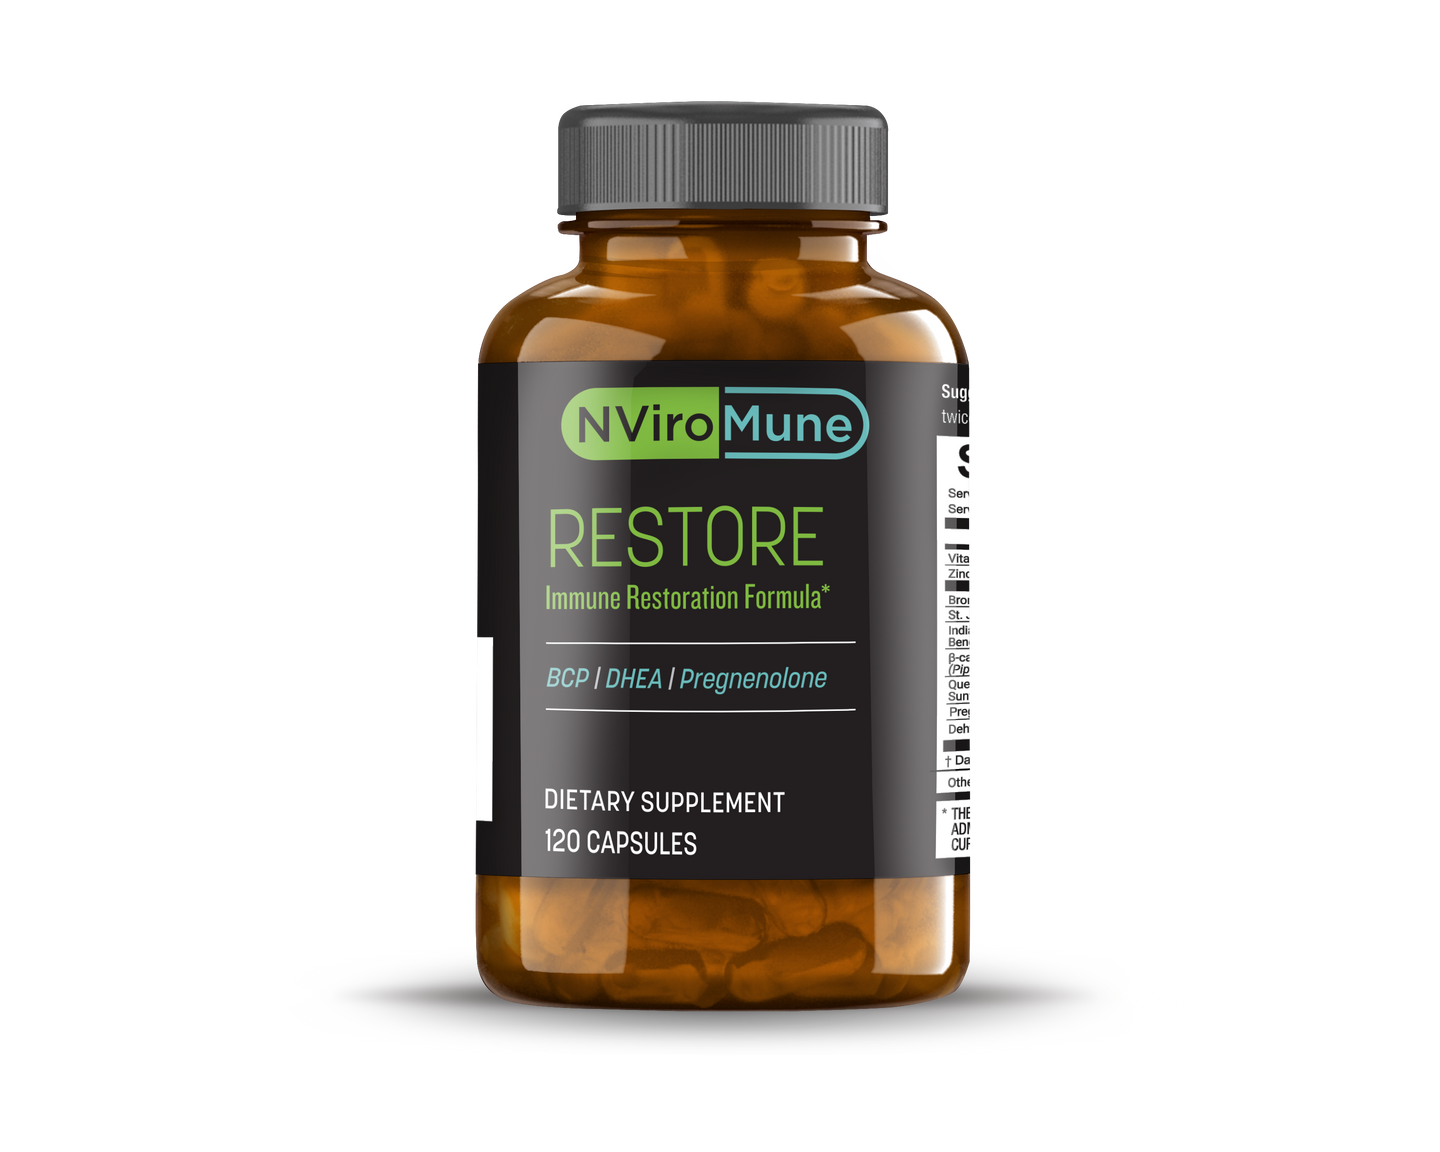 NViroMune – Restore 120ct bottle